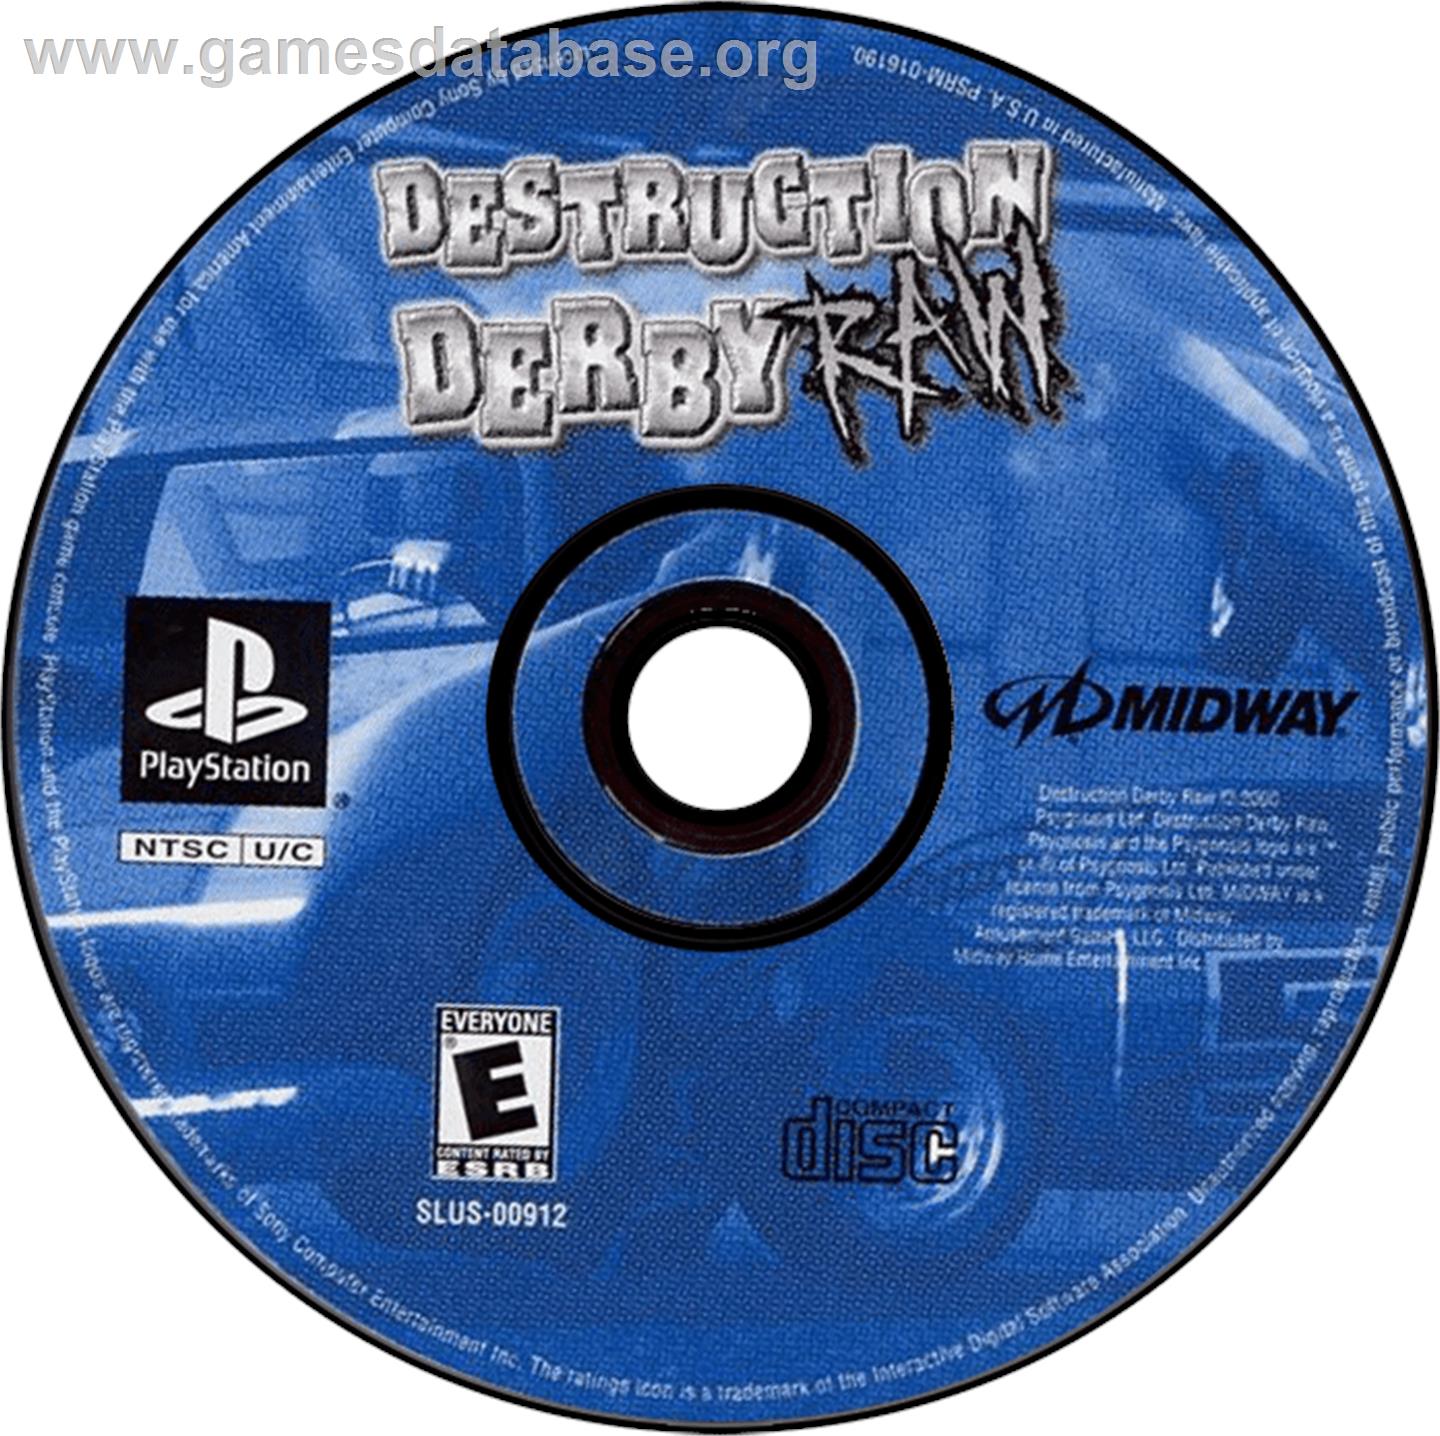 Destruction Derby Raw - Sony Playstation - Artwork - Disc